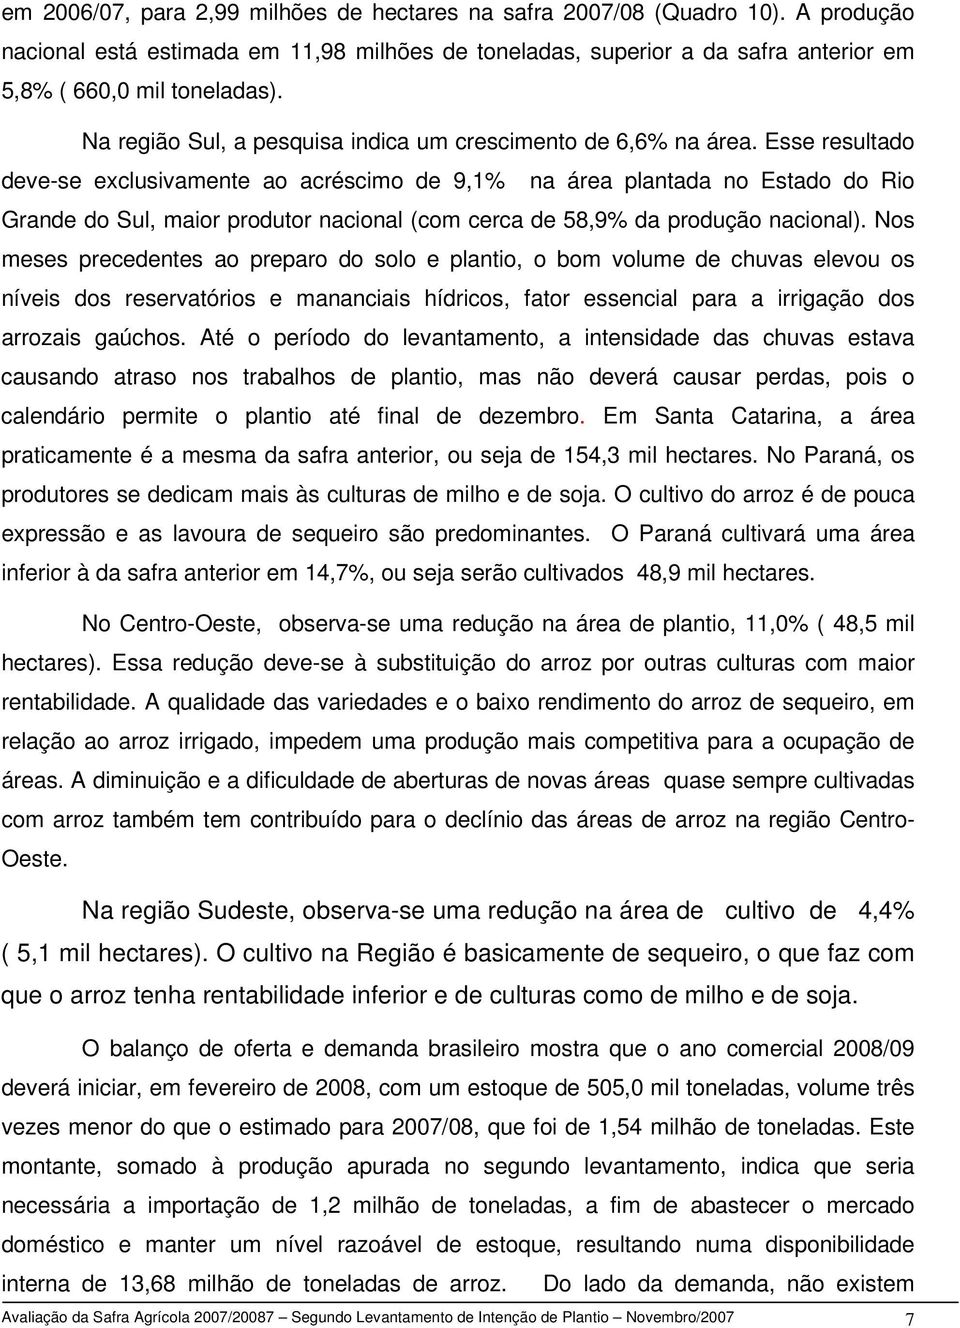 Esse resultado deve-se exclusivamente ao acréscimo de 9,1% na área plantada no Estado do Rio Grande do Sul, maior produtor nacional (com cerca de 58,9% da produção nacional).